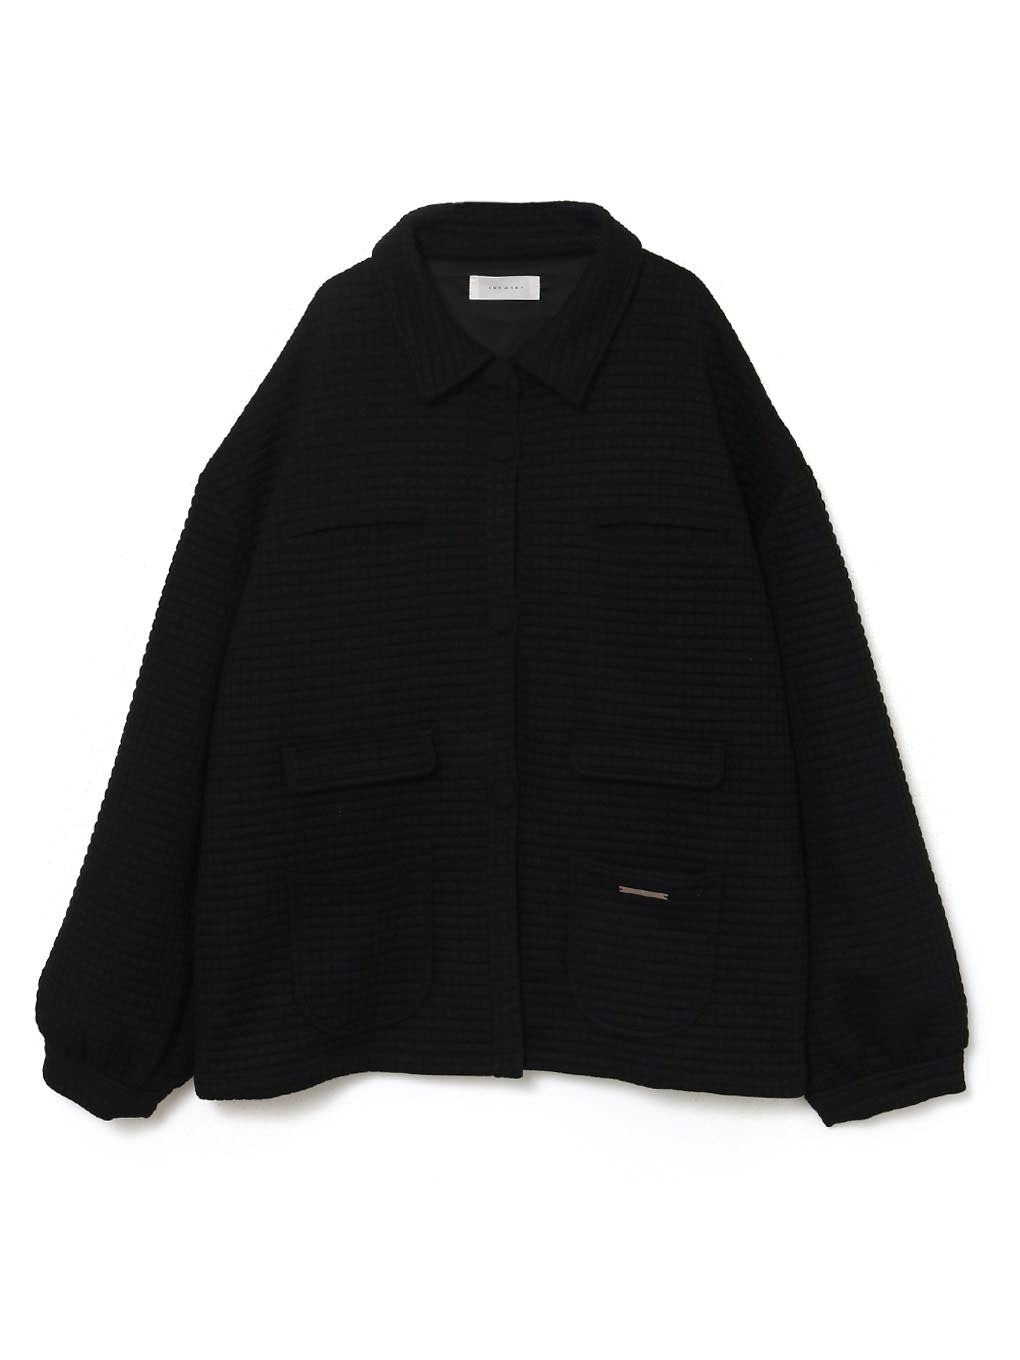 8,750円Ivy loose jacket